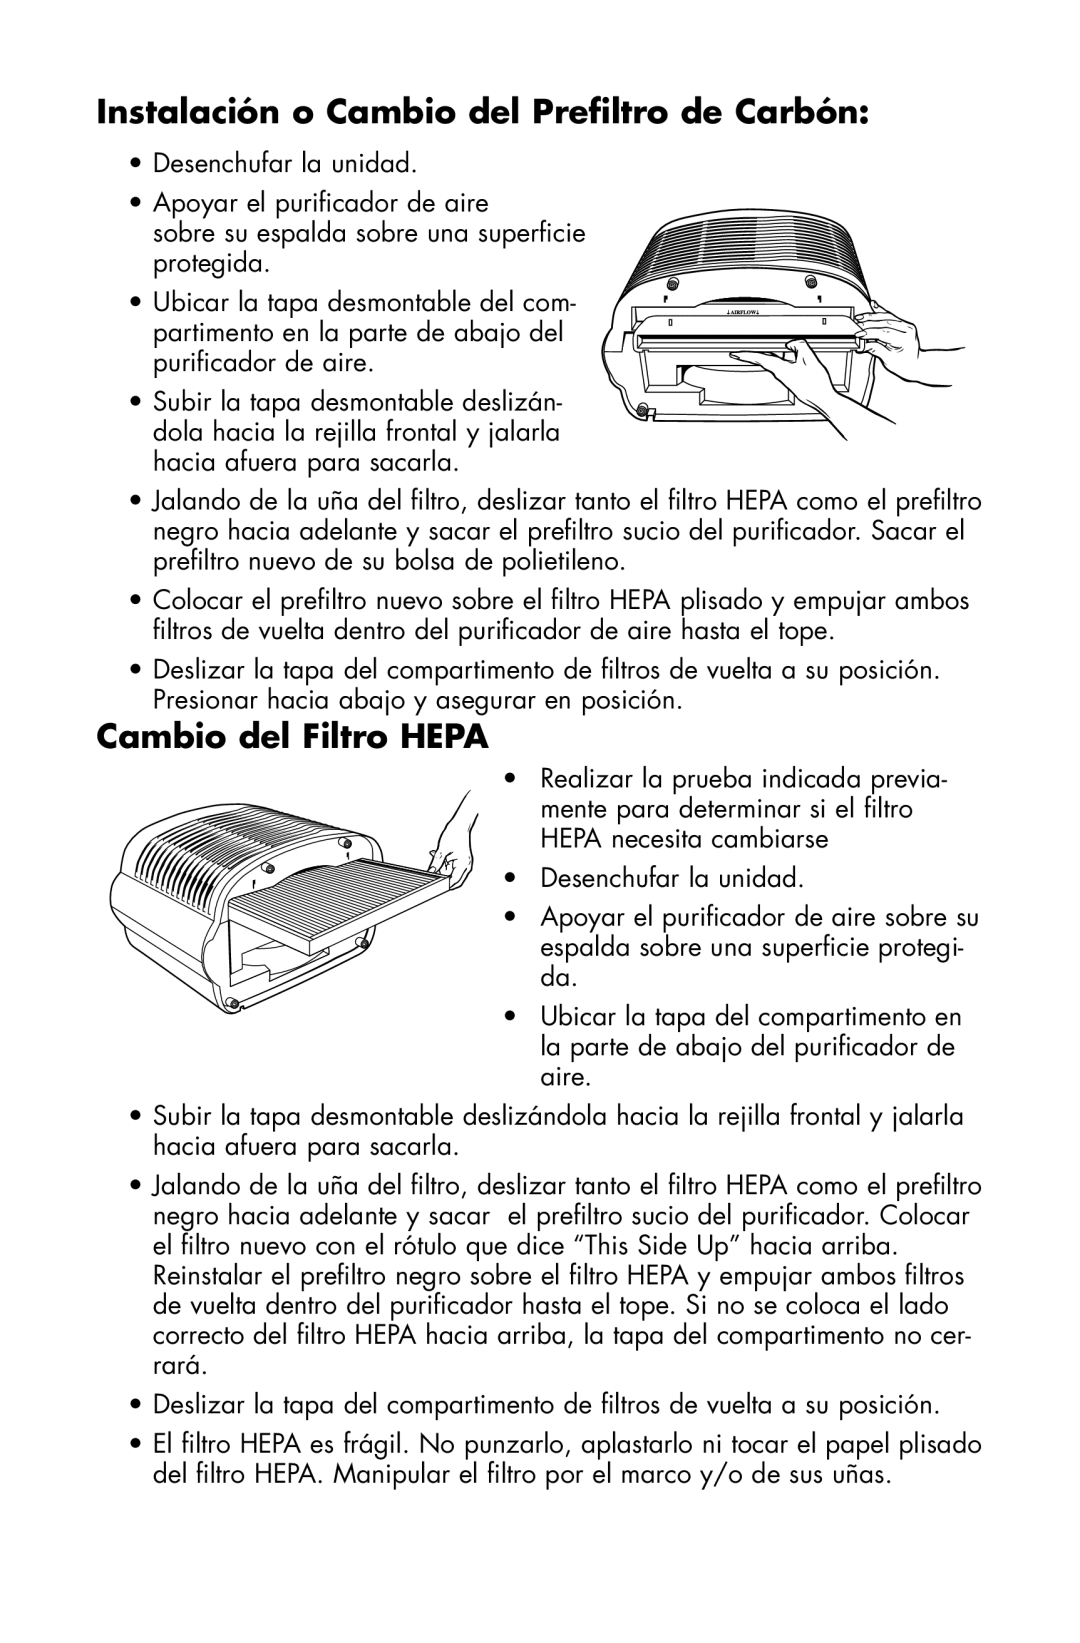 Essick Air 127-001 manual Instalación o Cambio del Preﬁltro de Carbón, Cambio del Filtro HEPA 